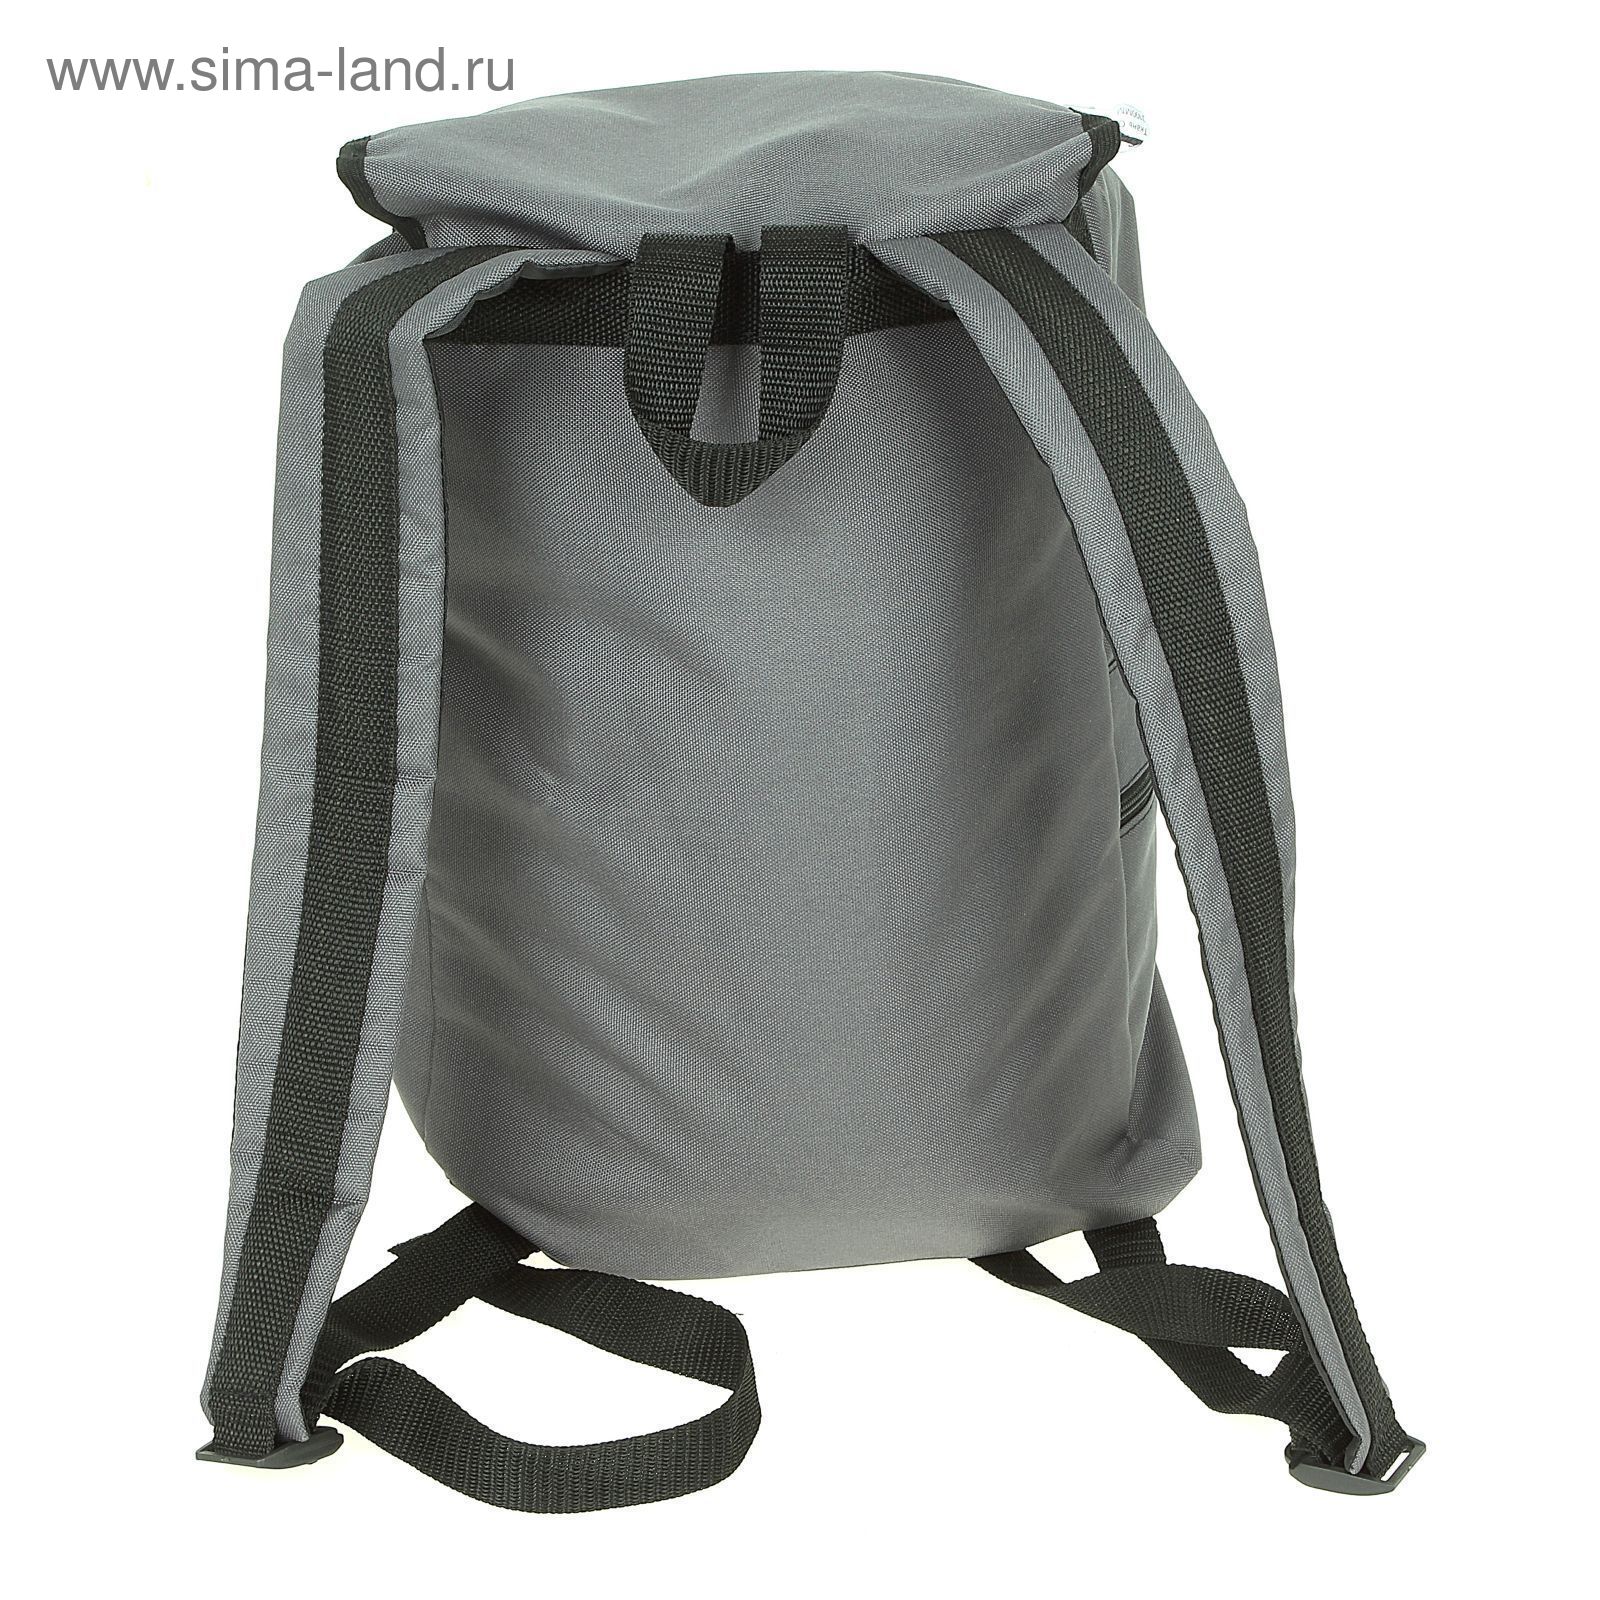 Рюкзак Тип-18, 30 л, цвета МИКС